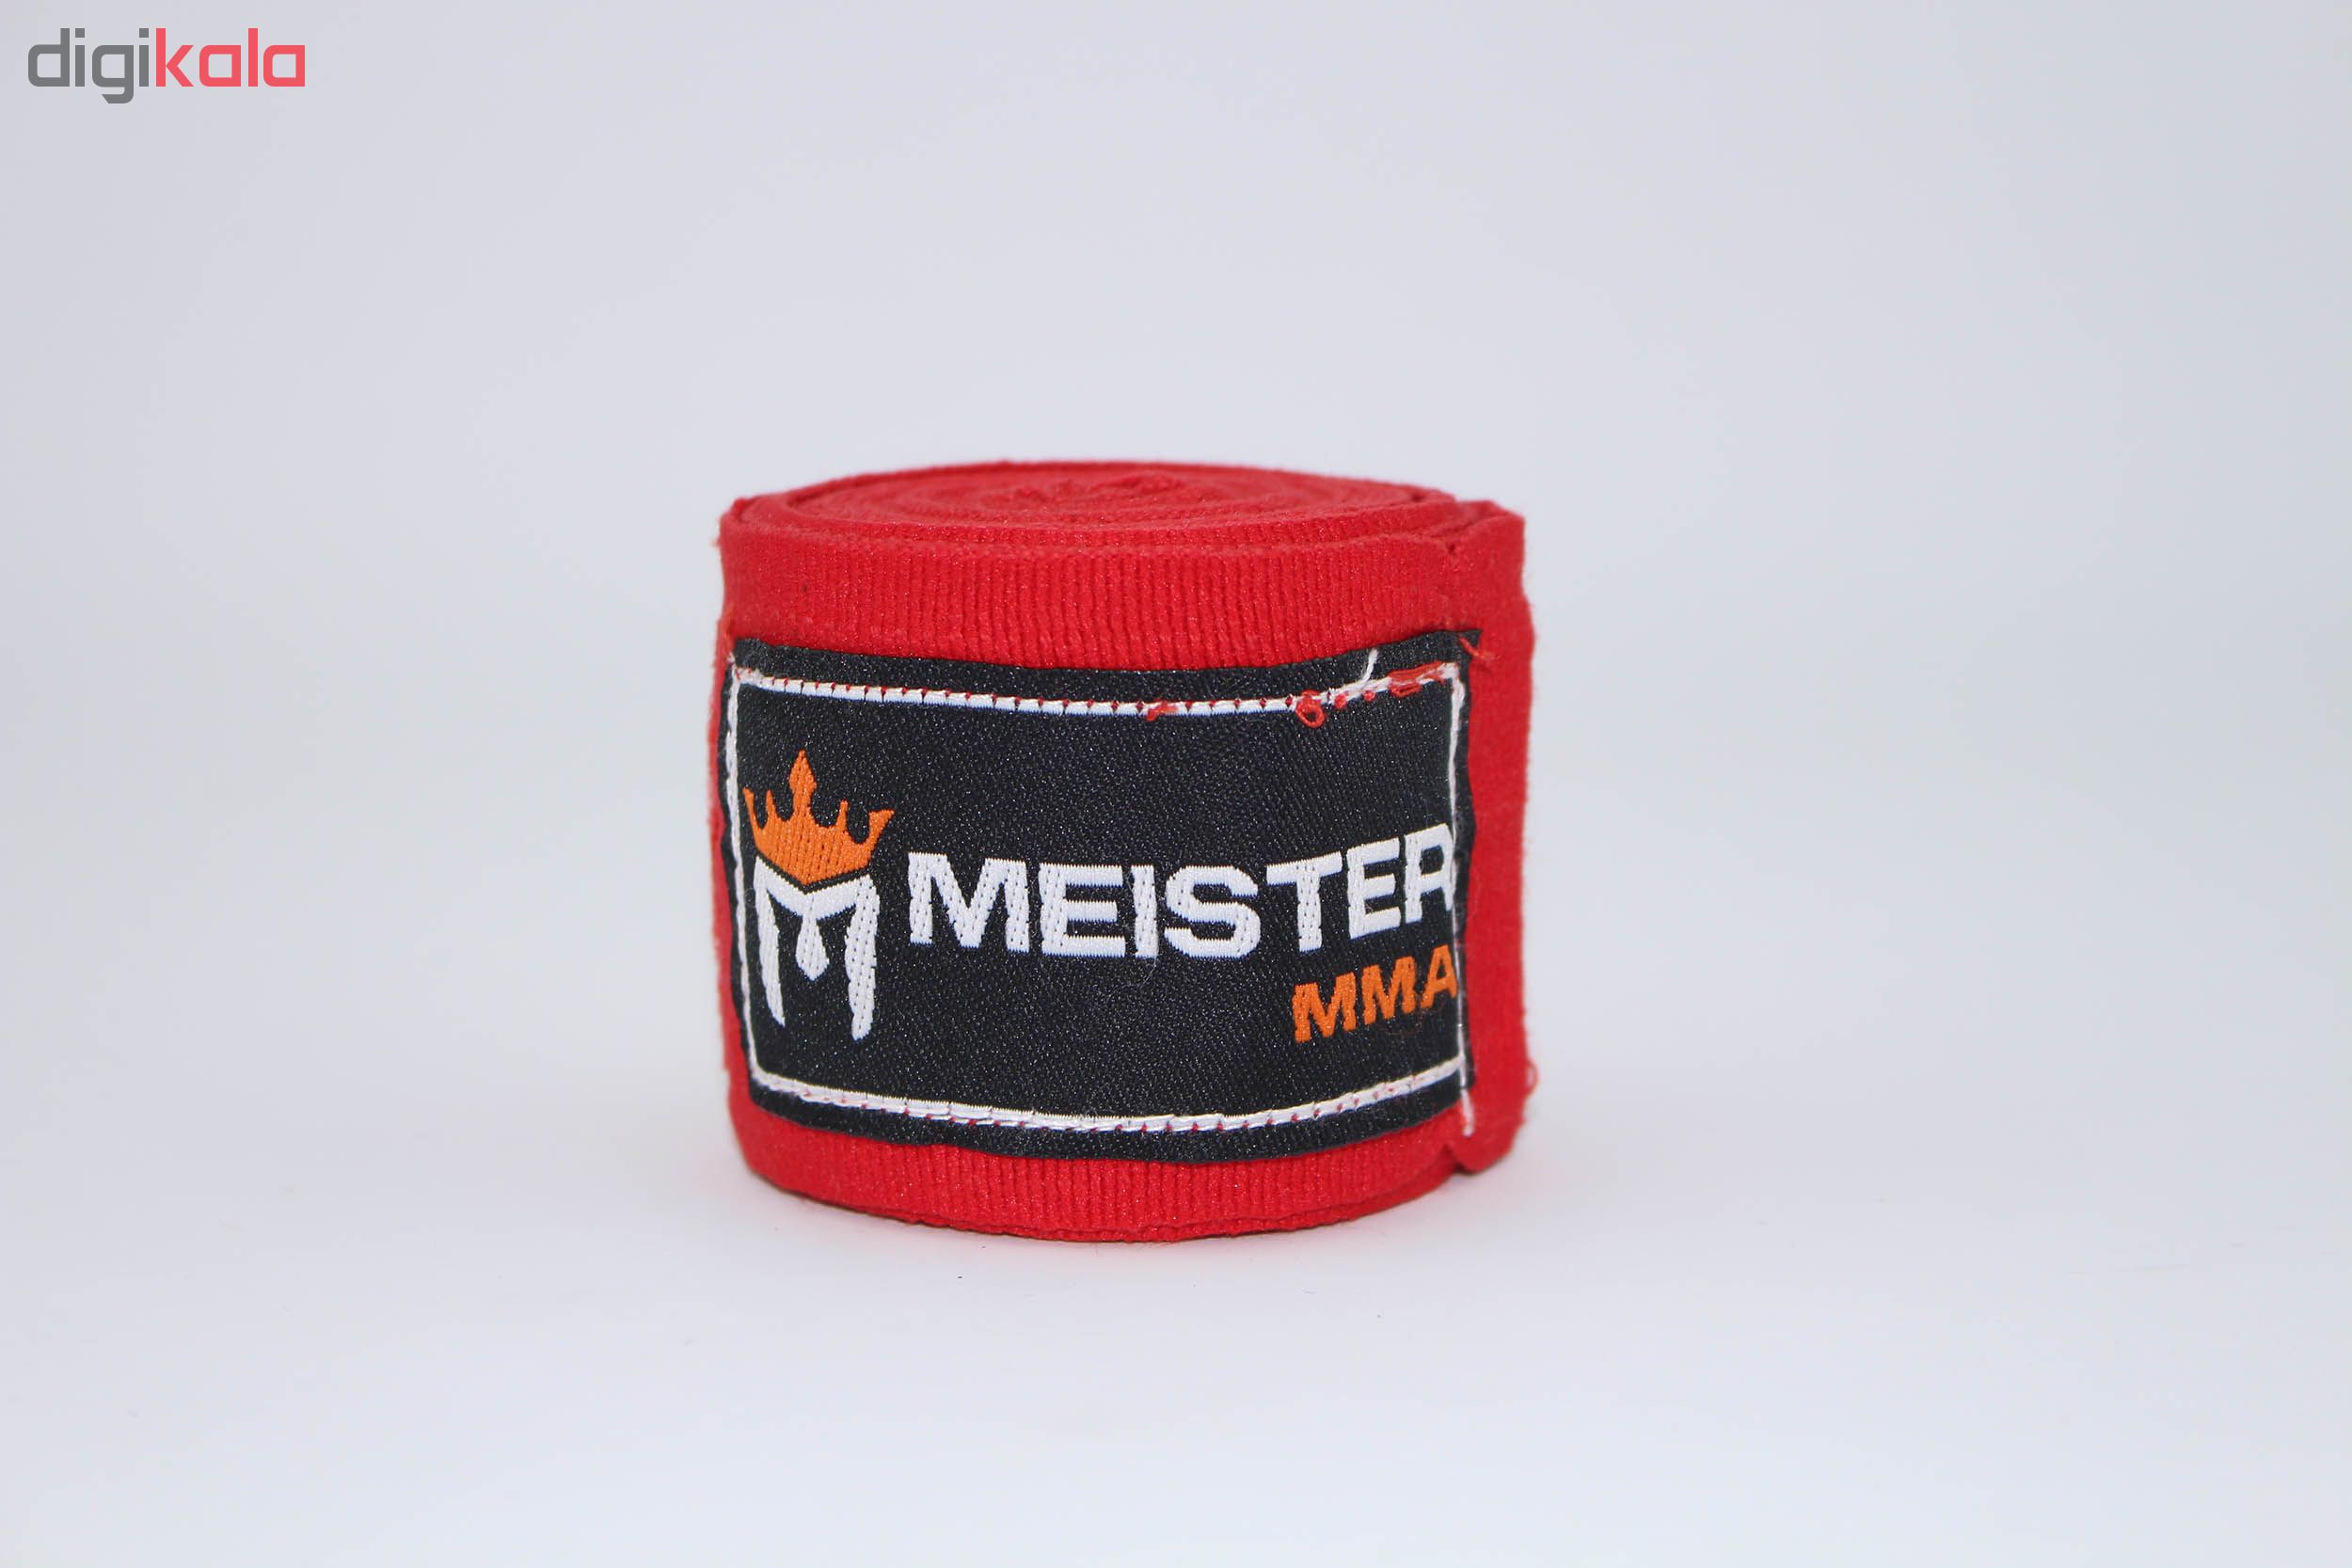 باند بوکس میستر مدل Pro MMA بسته 2 عددی